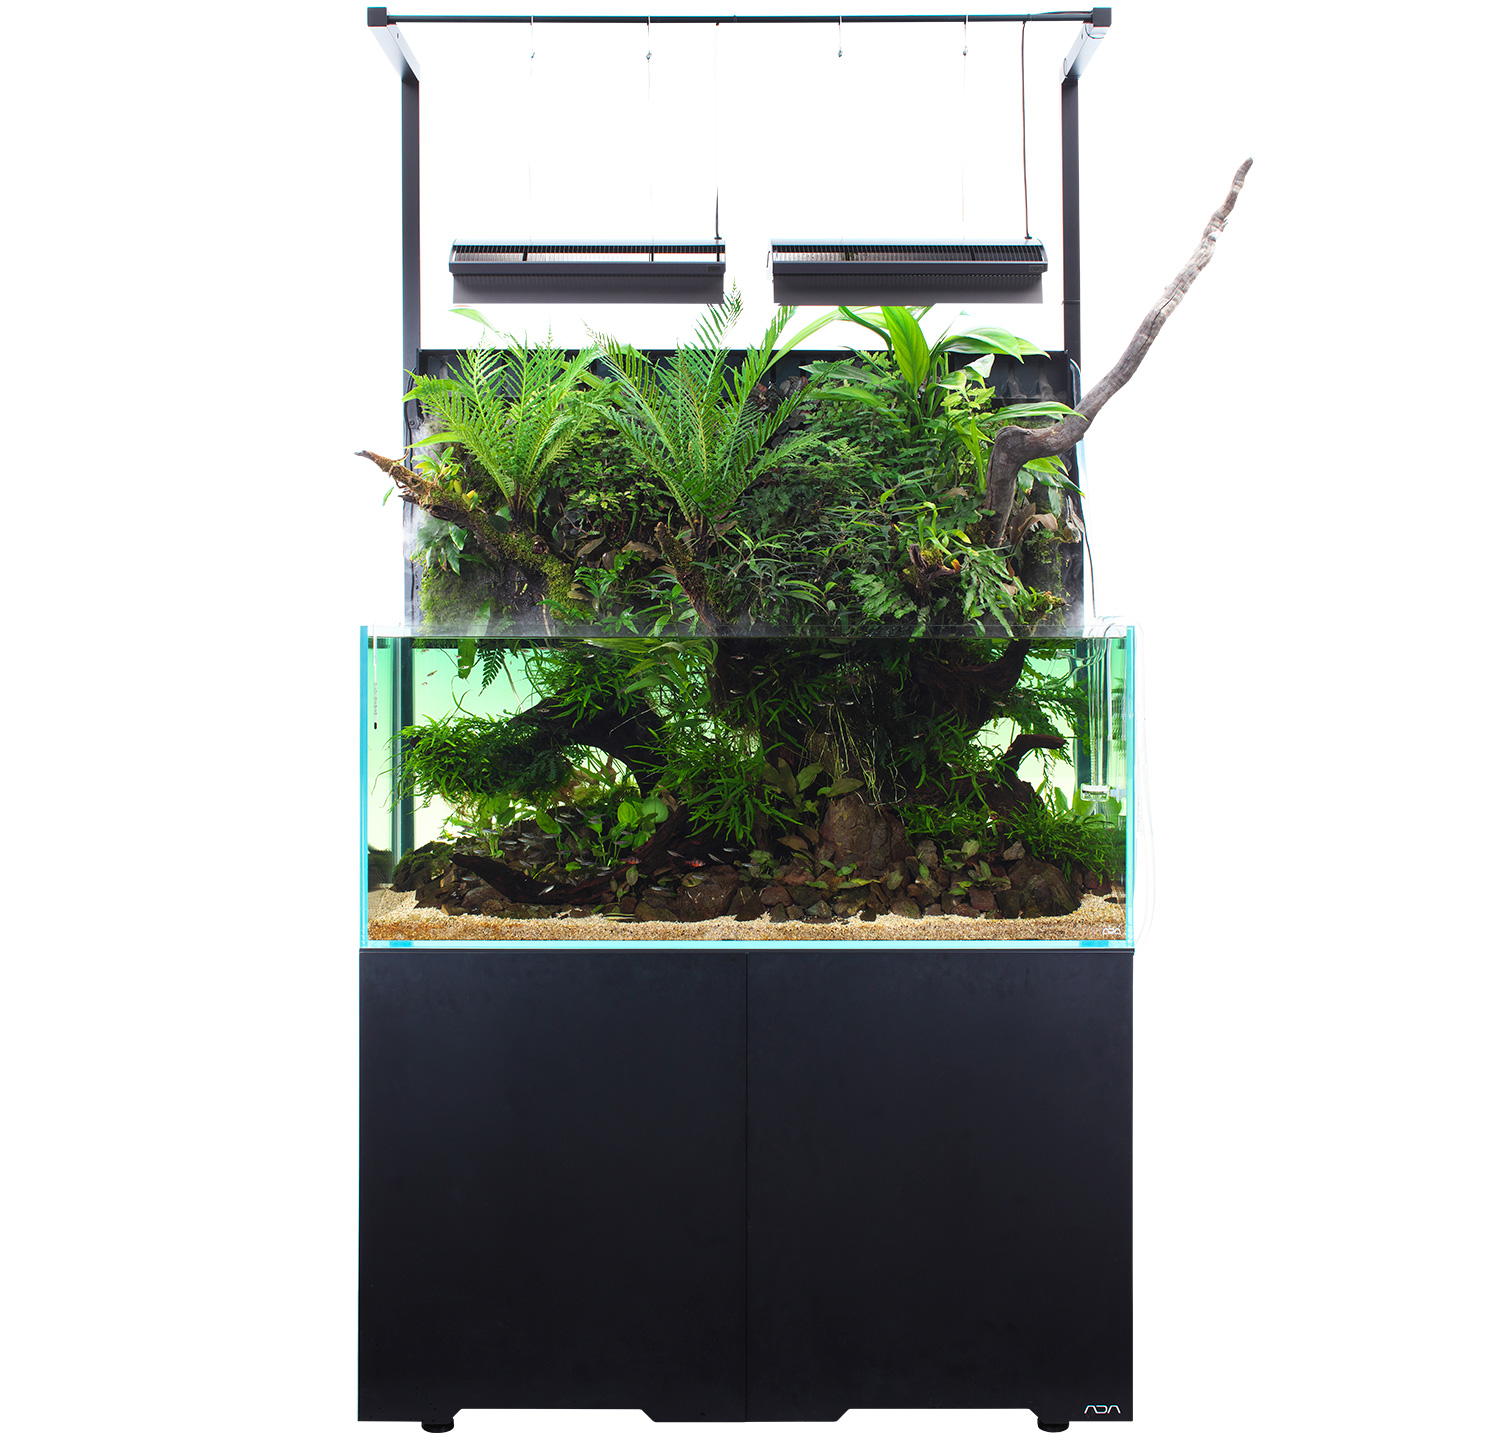 MIZUKUSA MIST WALL 「熱帯植物を繁茂させる最新システム」 | AQUA